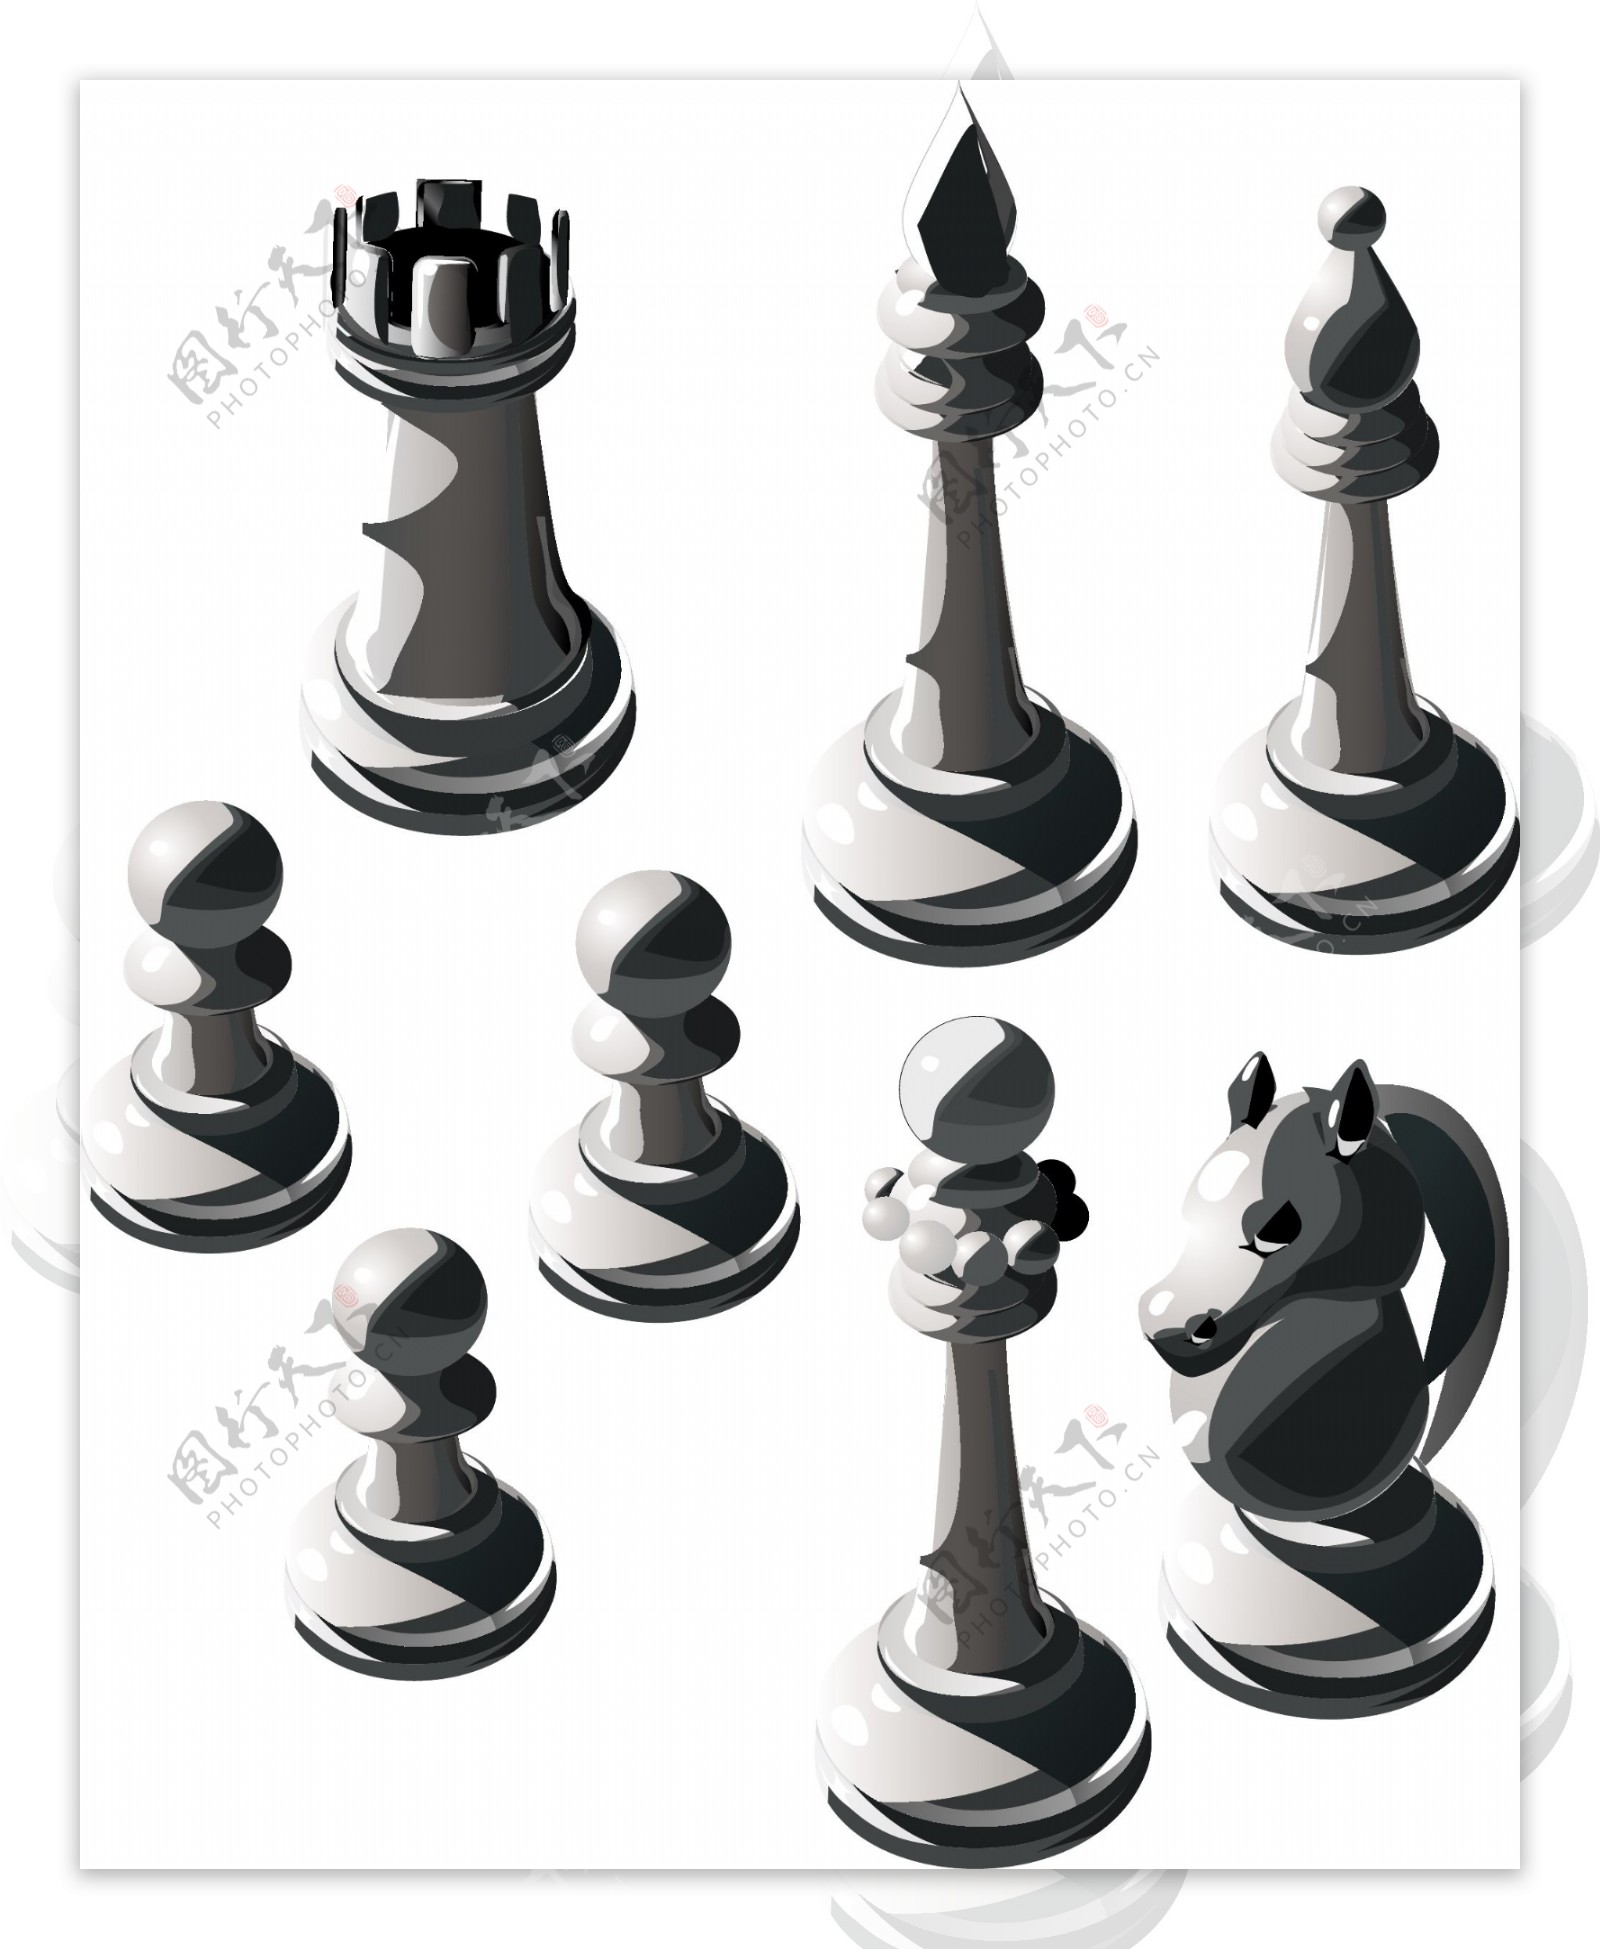 矢量素材国际象棋